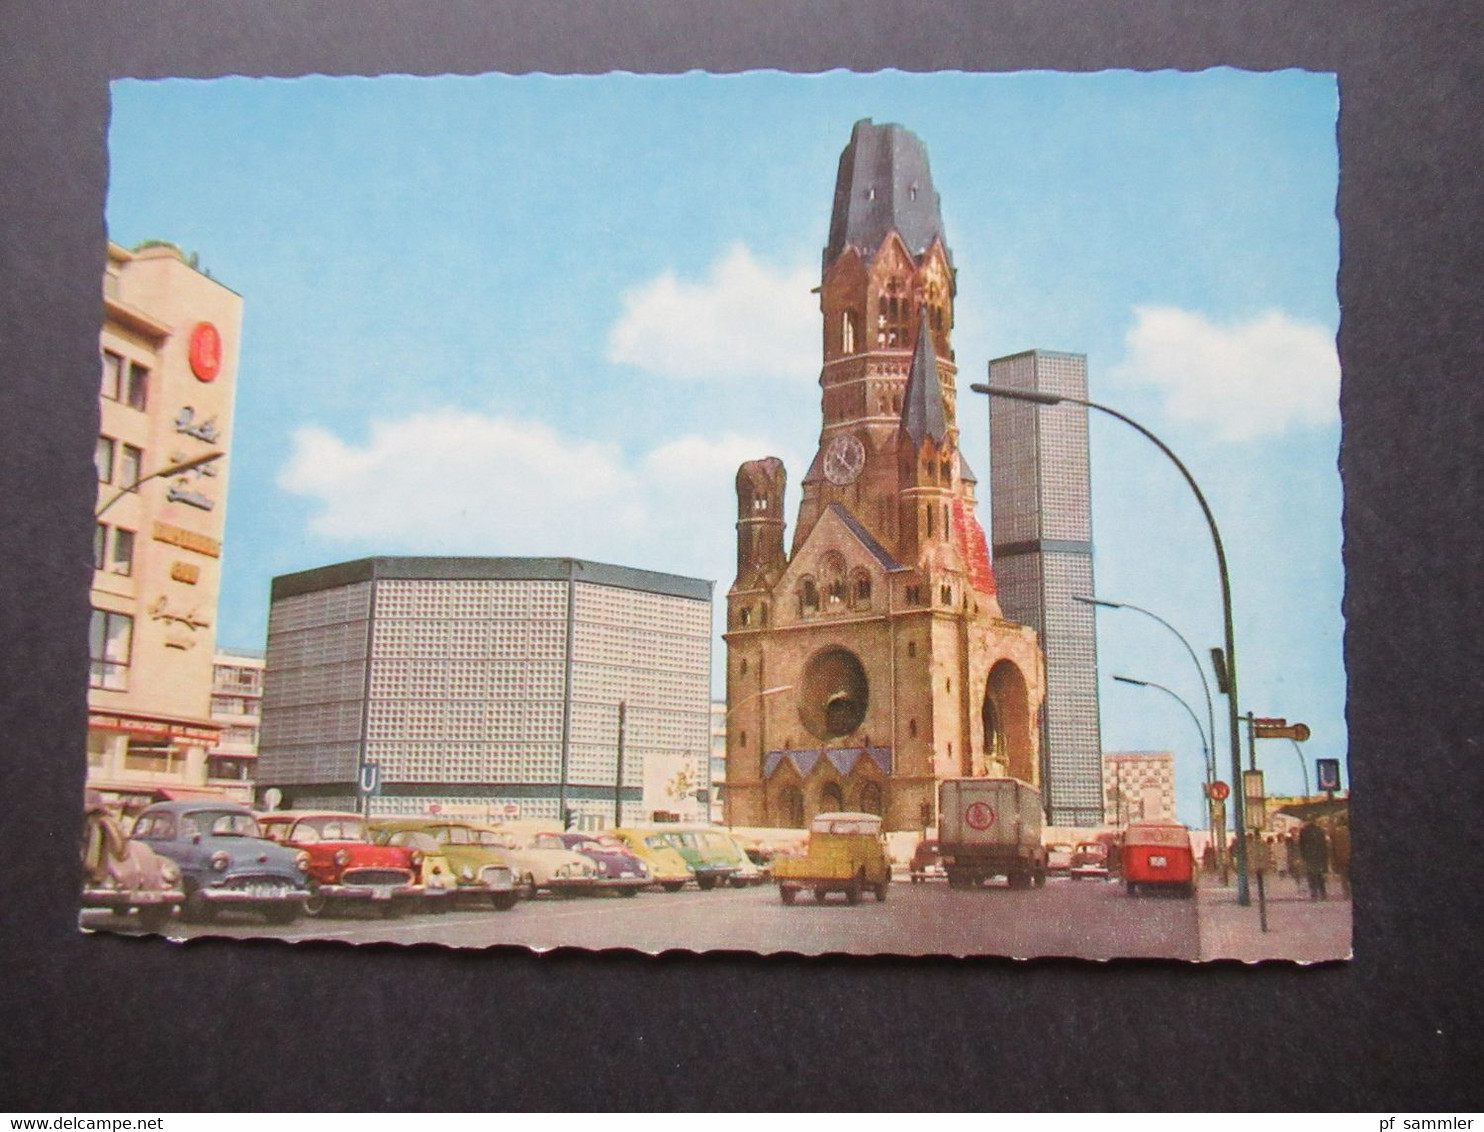 Berlin ca.1970er Jahre Bildserie / 6 AK verschiedene Motive wie Luftbrücken Denkmal, Kongreßhalle usw.